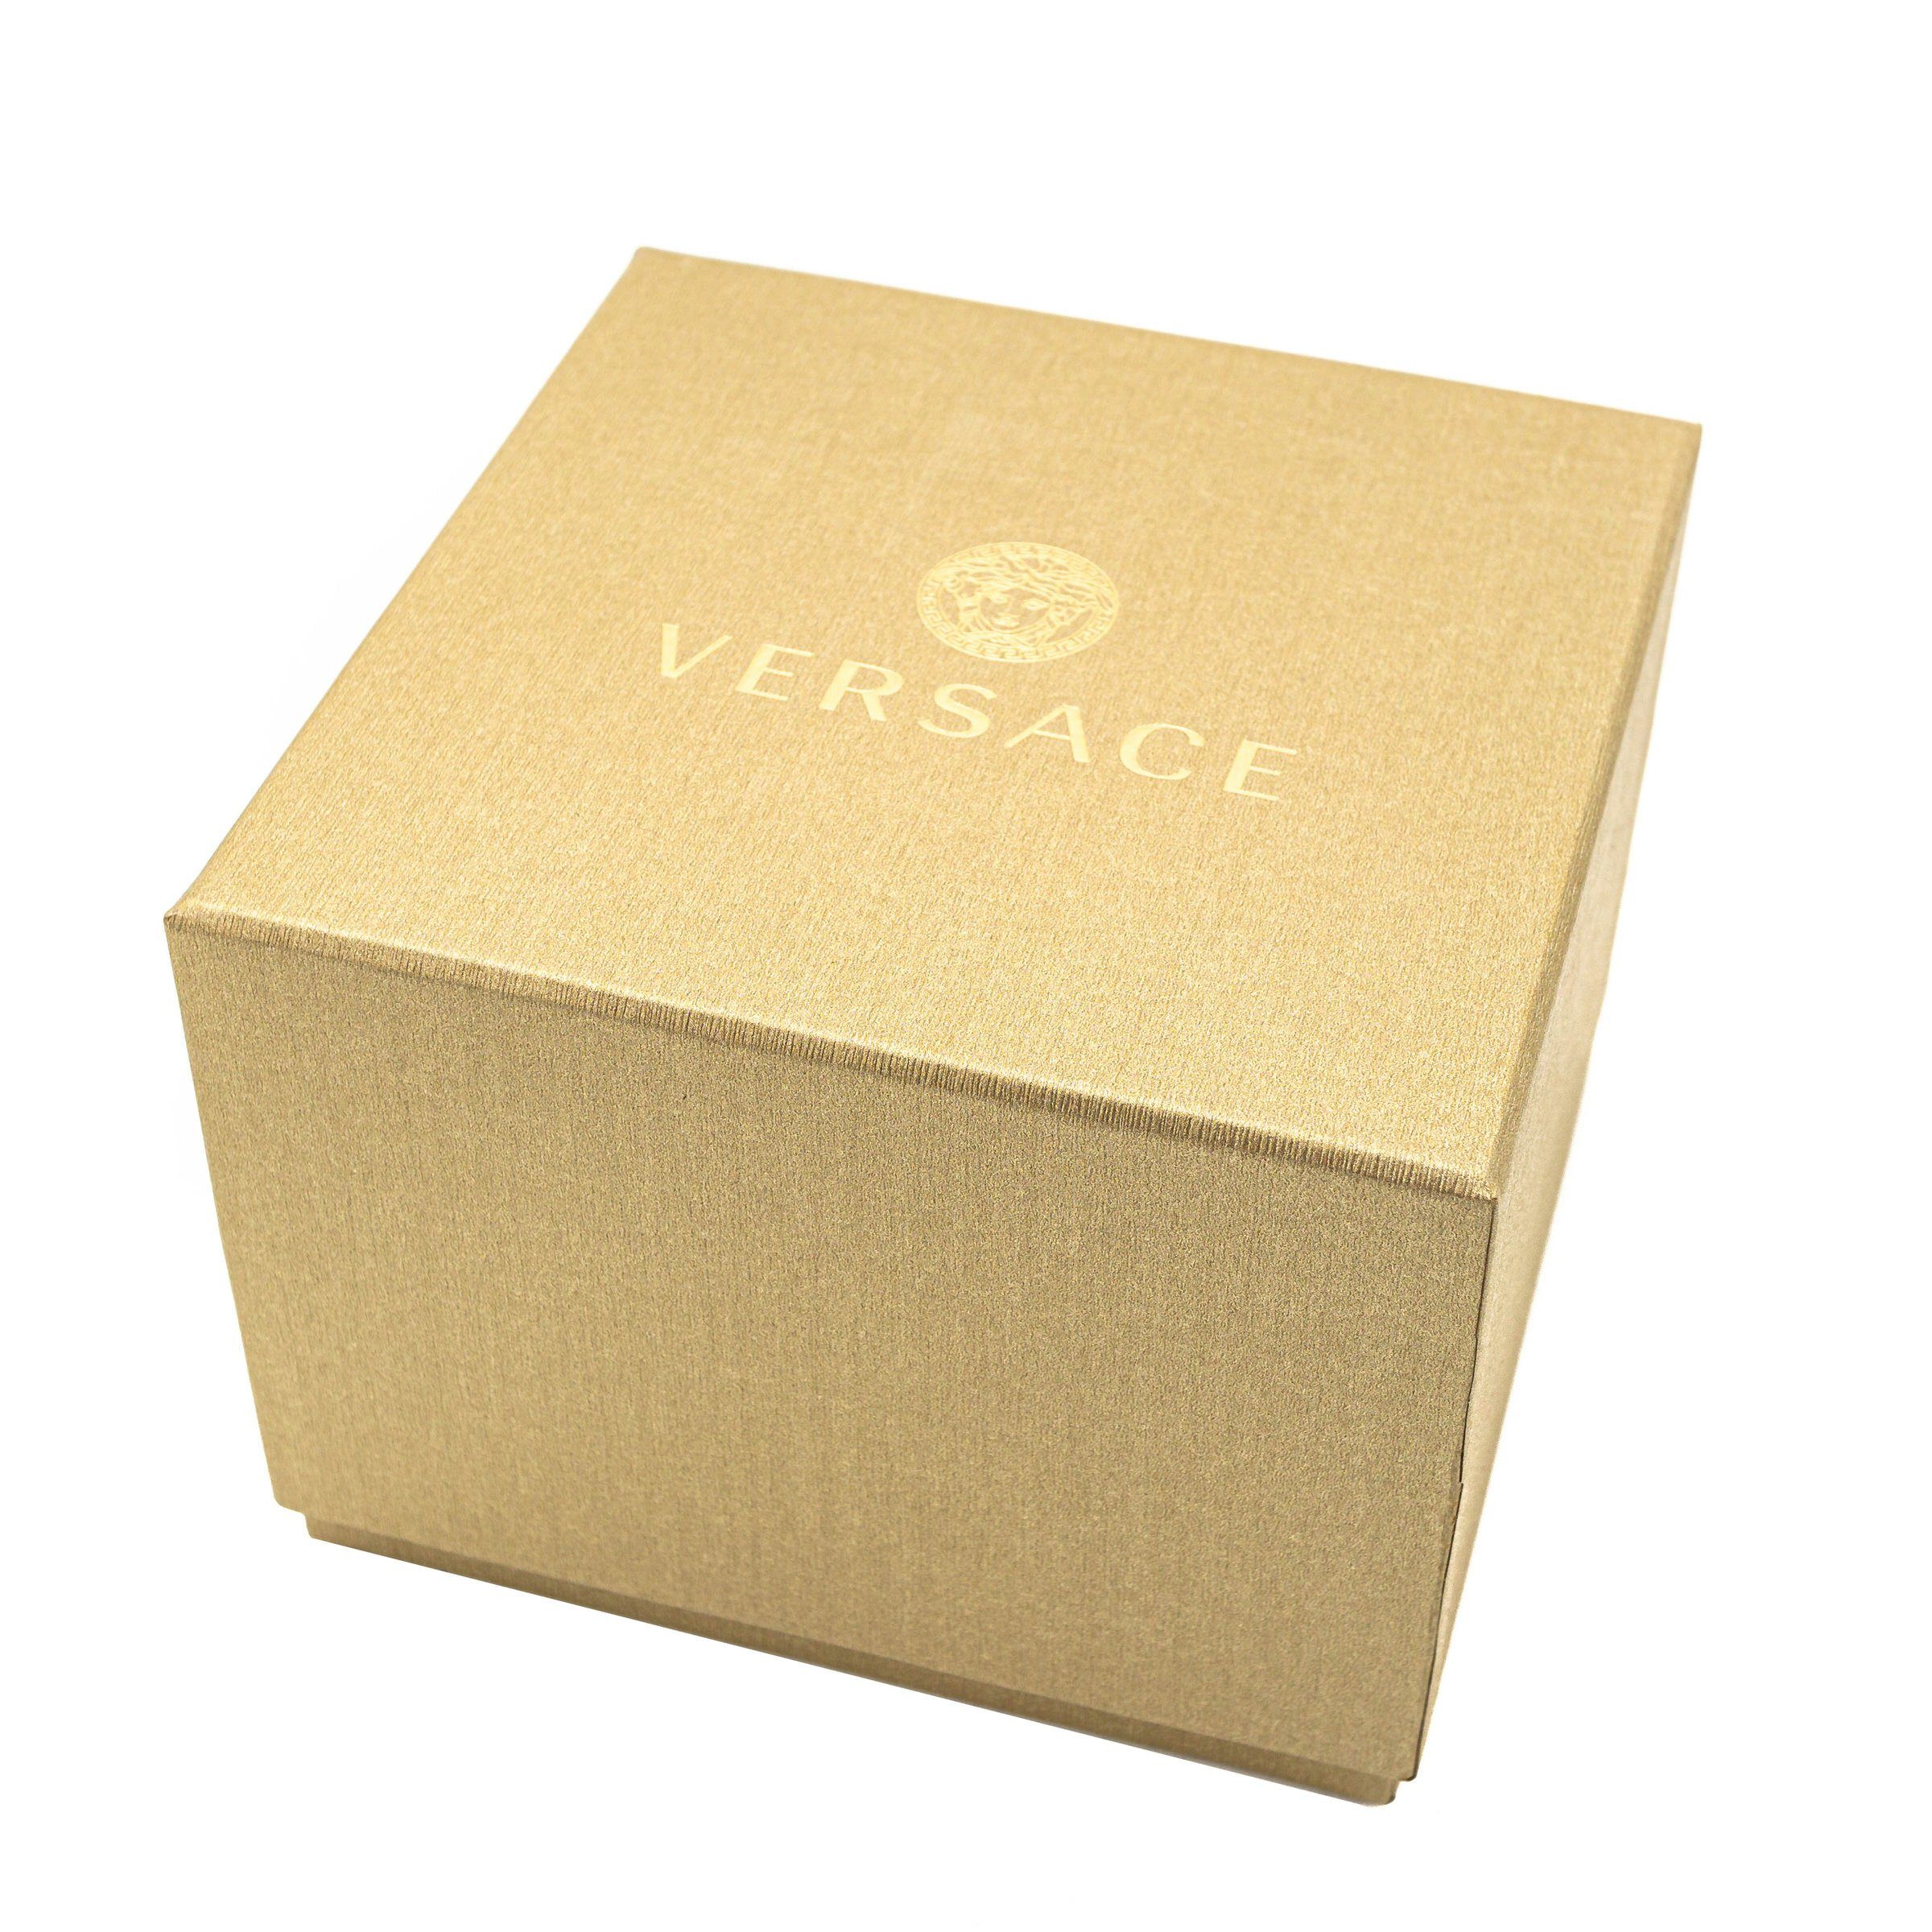 Uhr Schweizer V12010015, (1-tlg), Versace Hellenyium Swiss Made